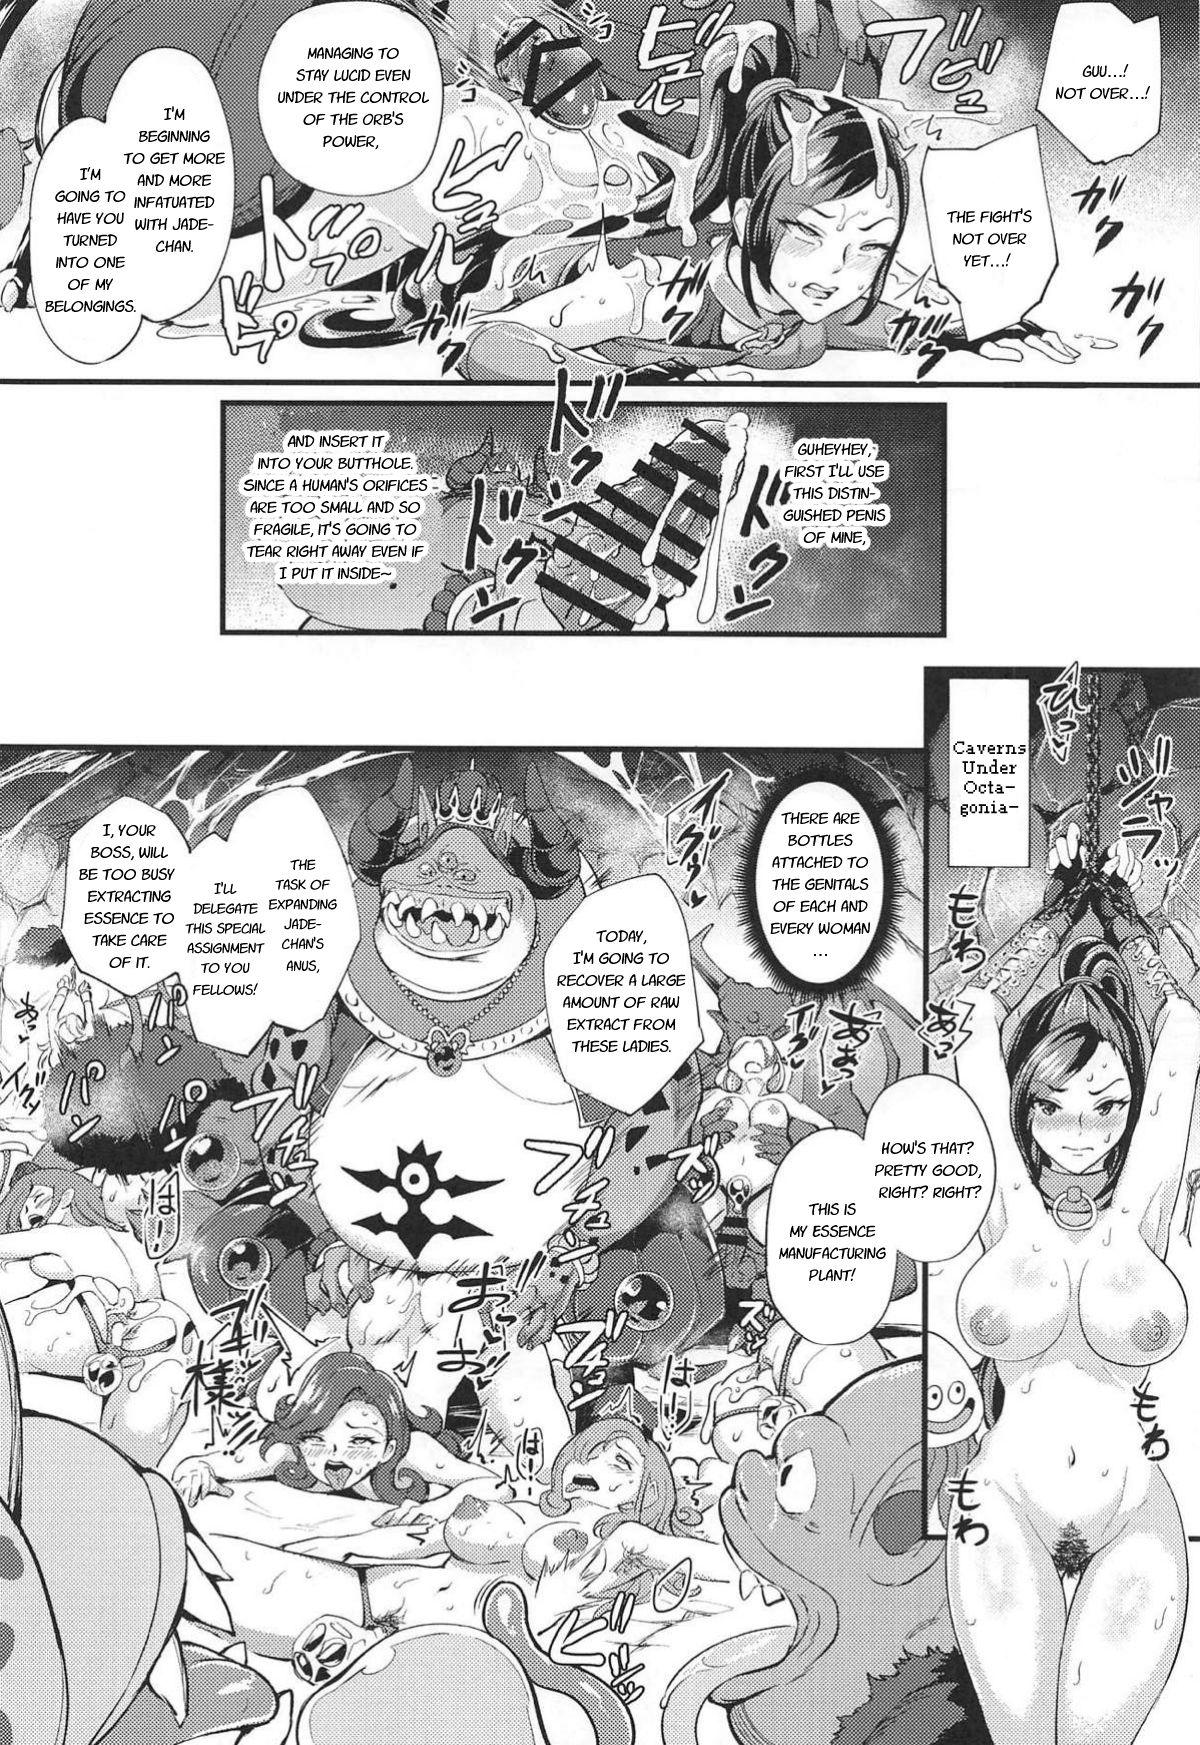 Banho Martina ga Youmagunou no Ketsuana Nikubenki ni Ochiru made - Dragon quest xi Free Blowjobs - Page 7